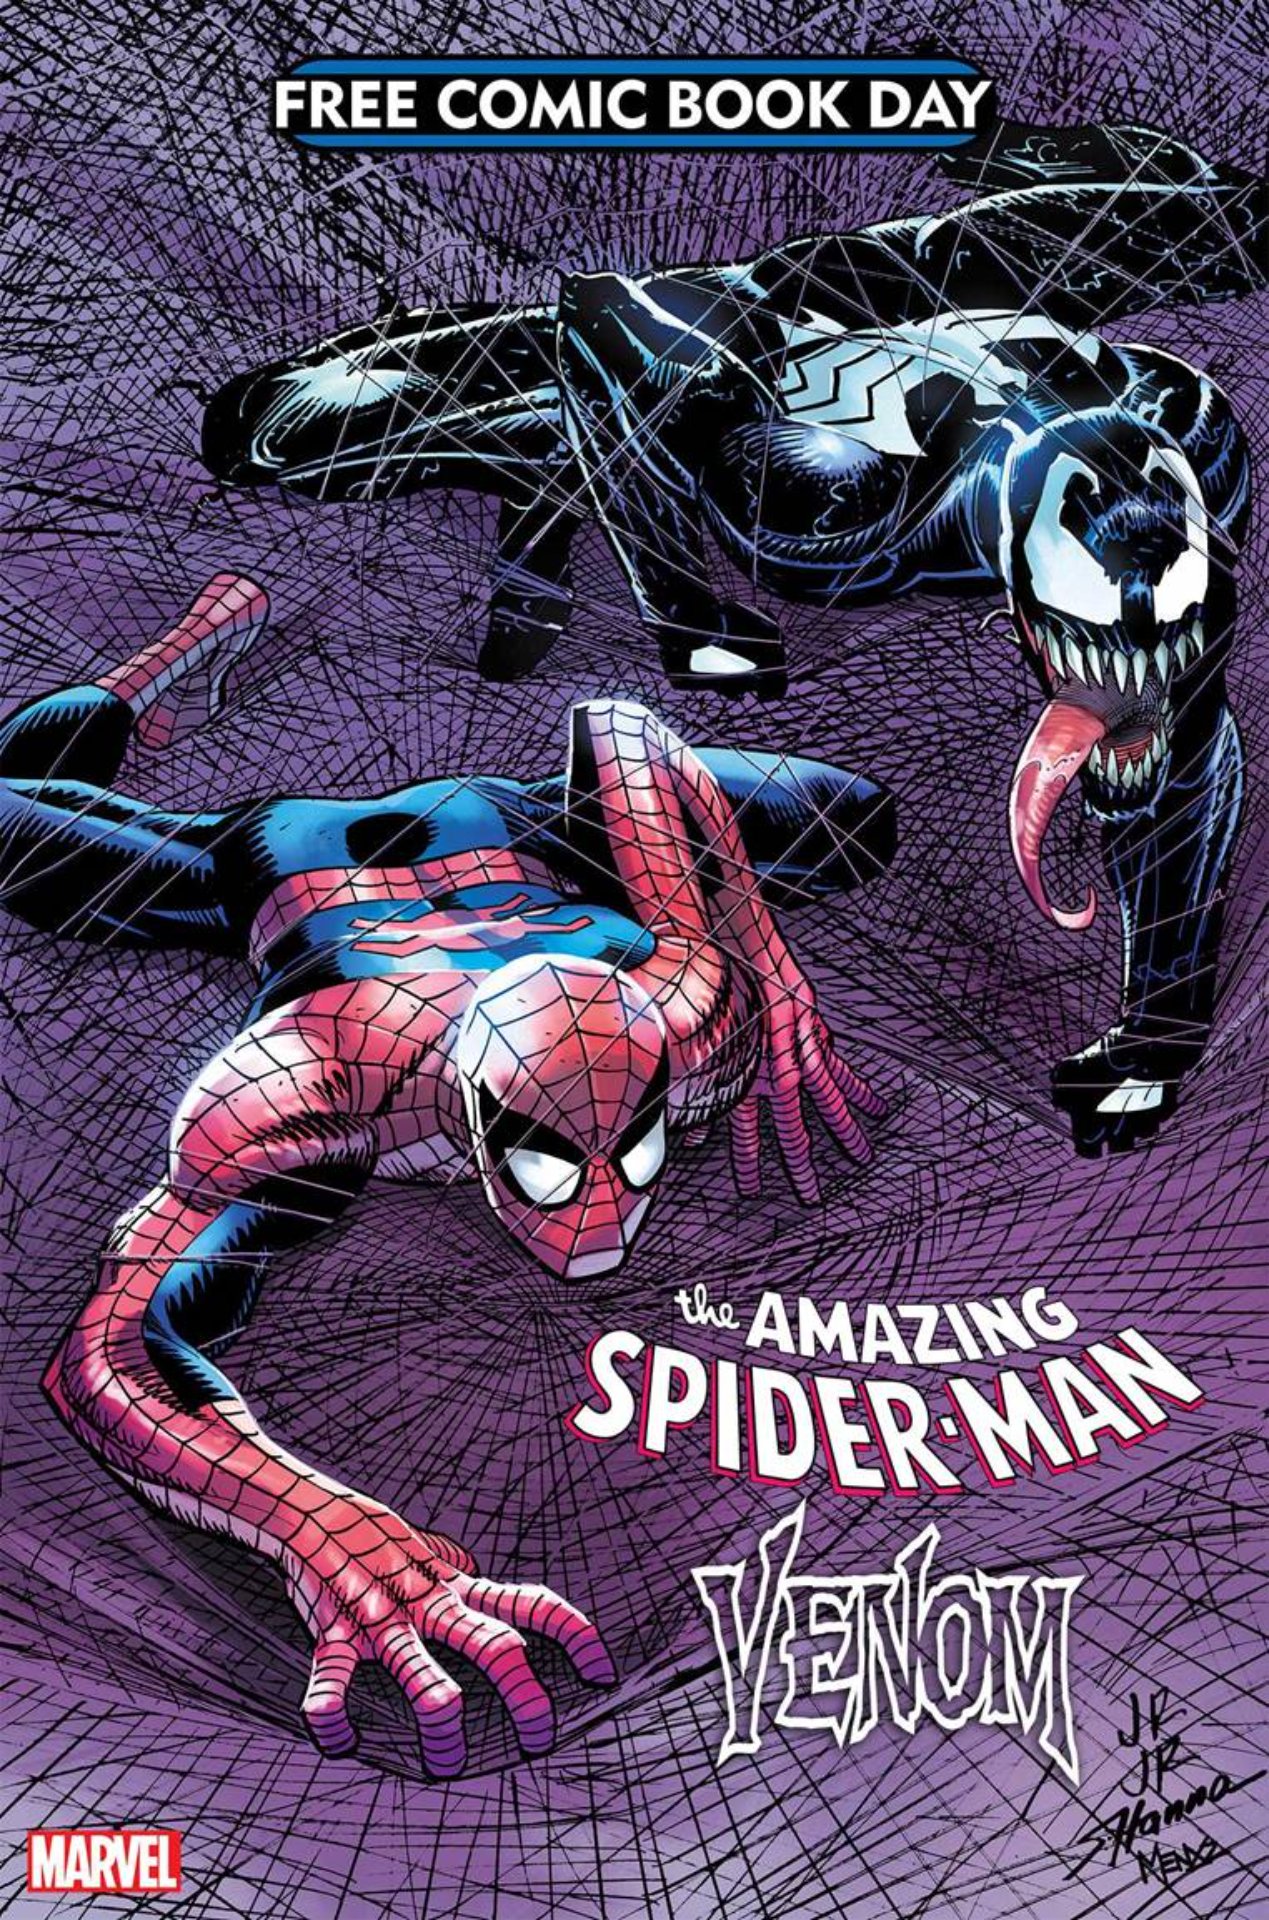 Erstaunlicher Spider-Man/Venom #1